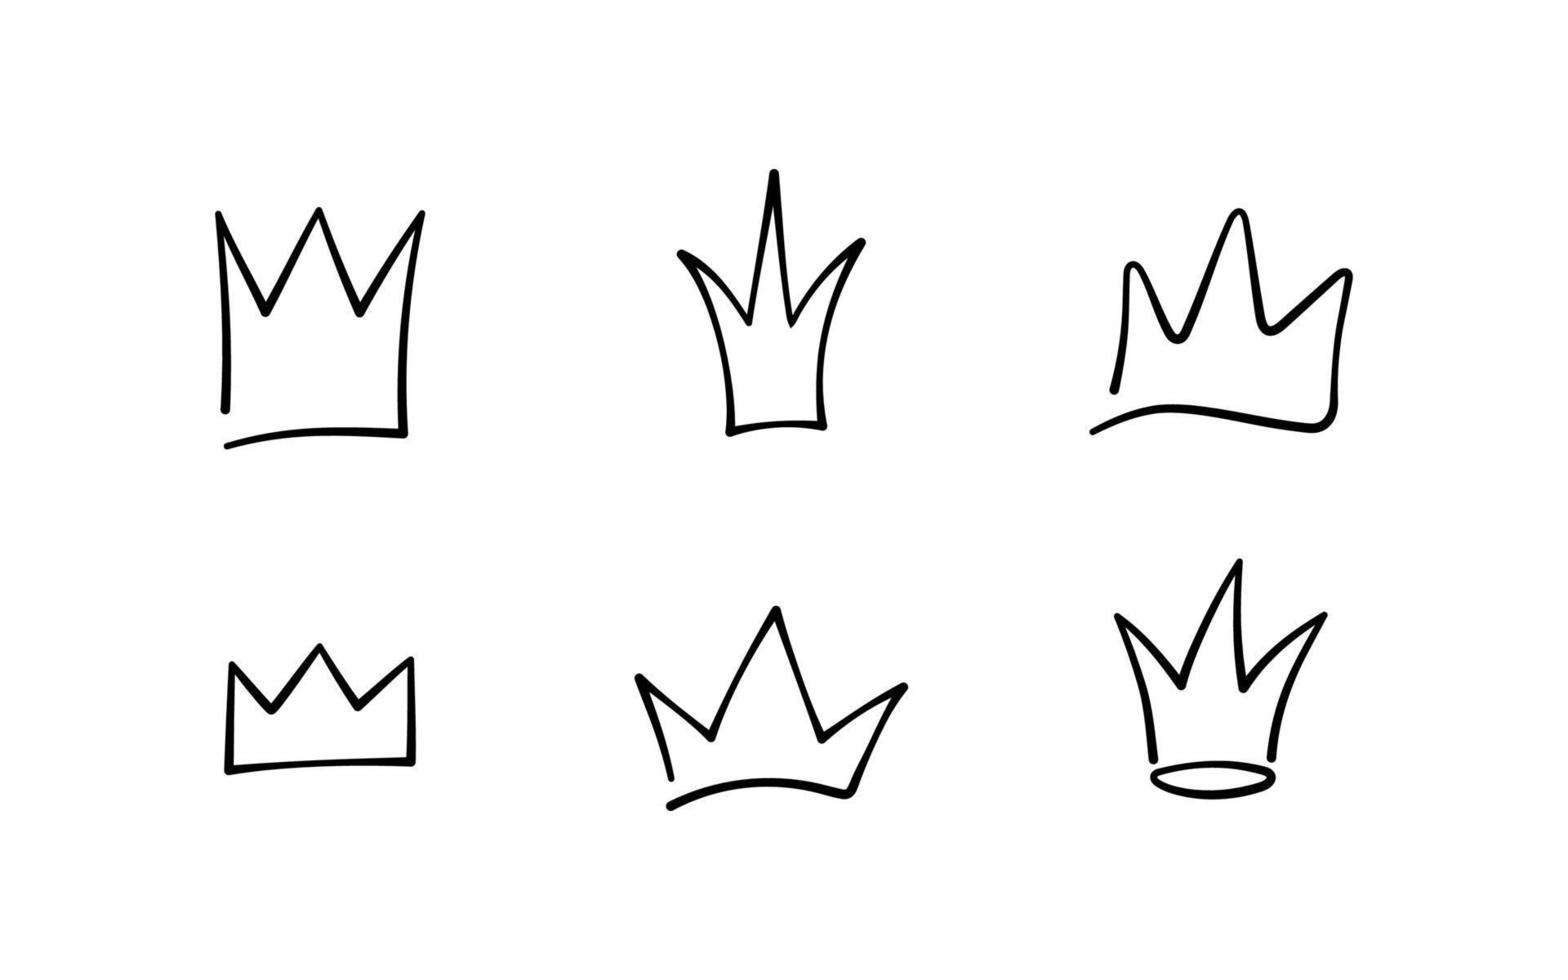 conjunto de coroas de doodle desenhados à mão. esboços da coroa do rei, tiara majestosa, diademas reais do rei e da rainha. ilustração vetorial isolada em estilo doodle em fundo branco vetor